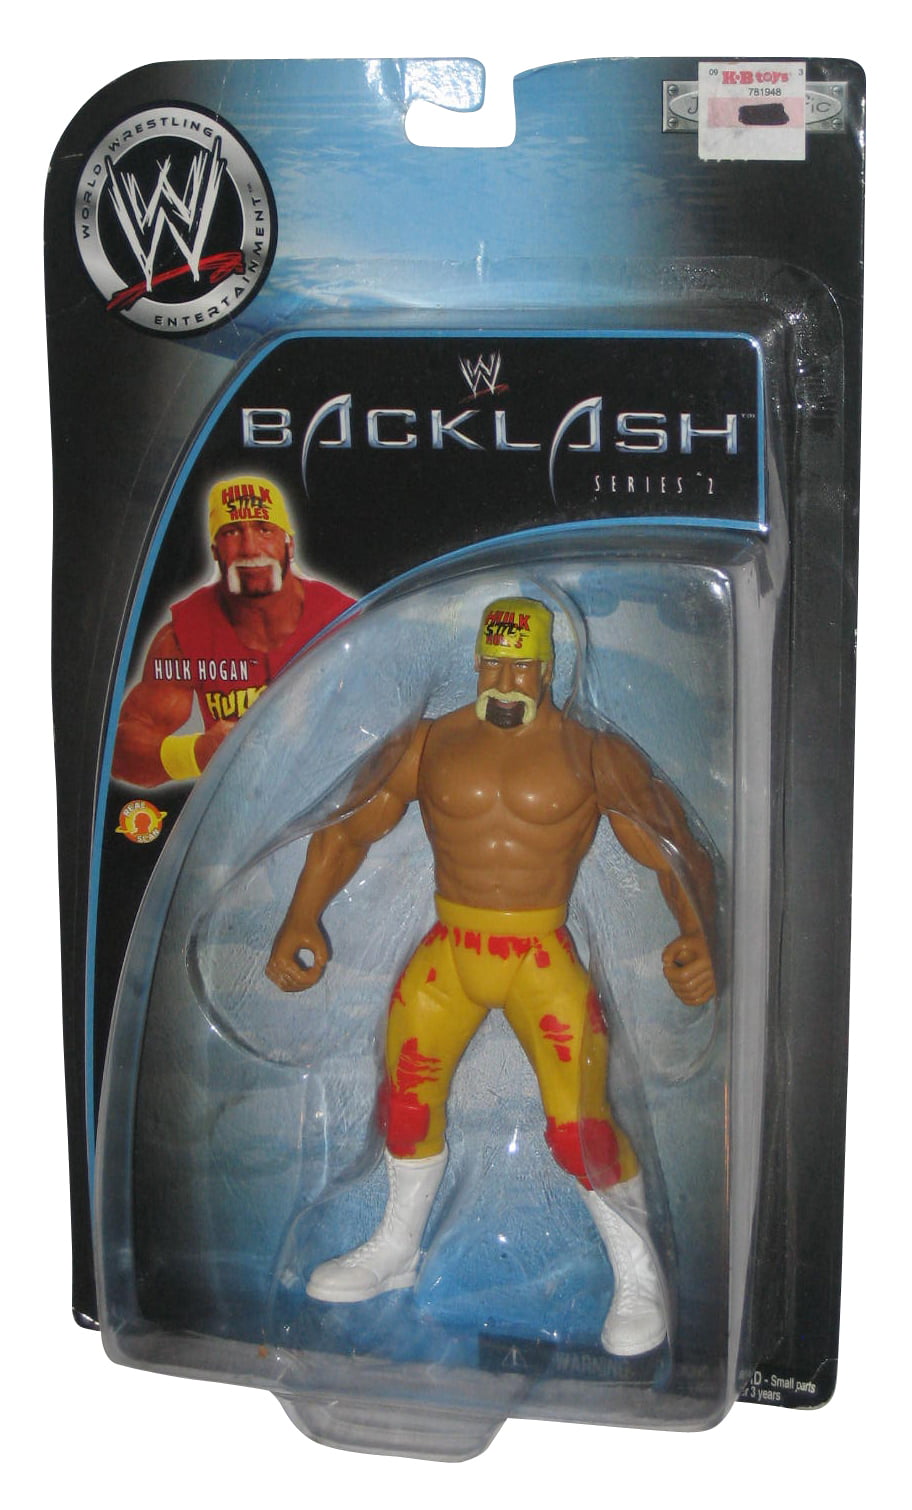 Wwe Backlash Series 2 Hulk Hogan Jakks, Hulk Hogan Shower Curtain